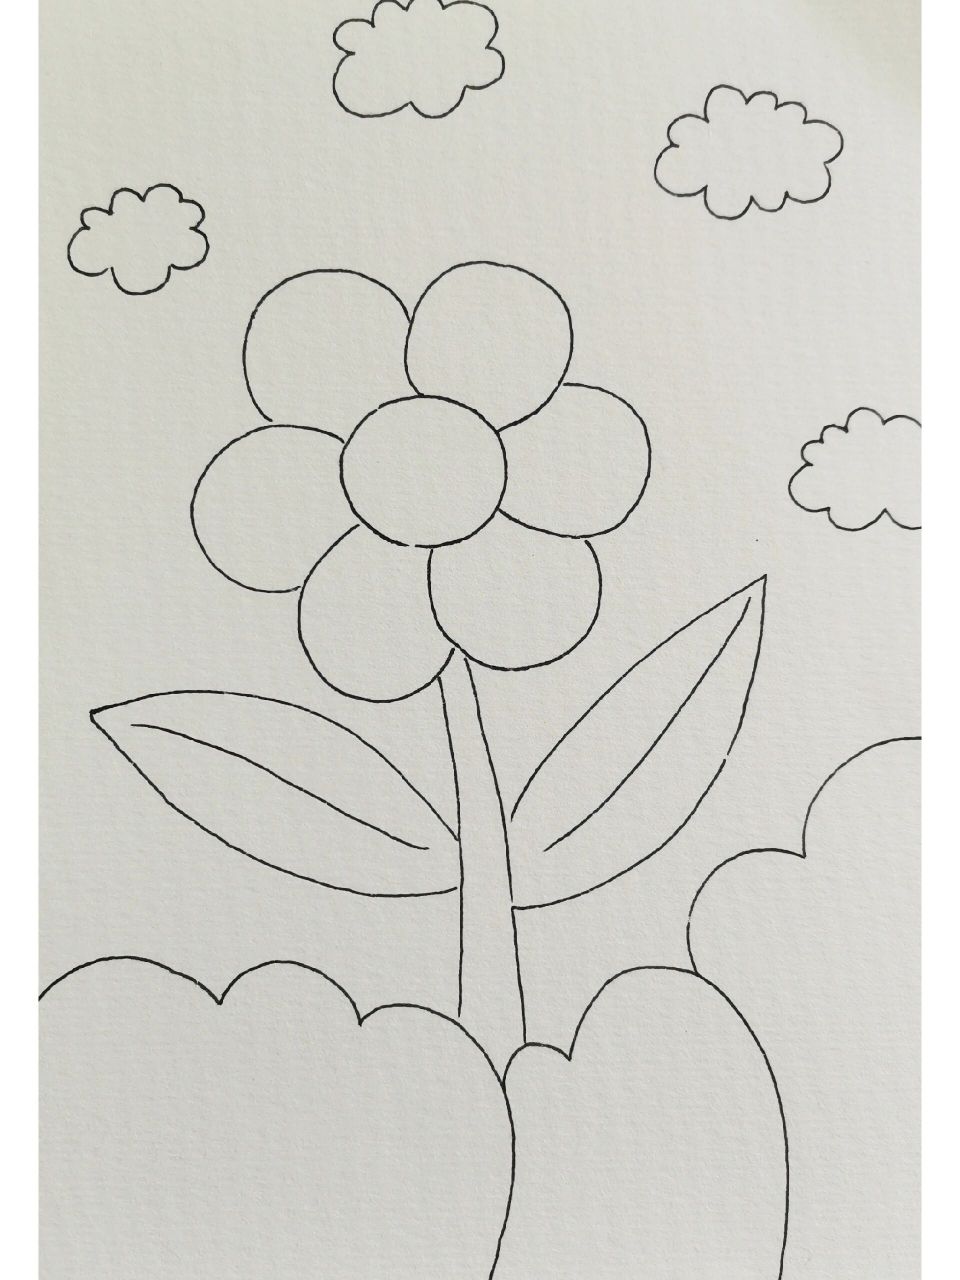 七色花 儿童创意画 简笔画 随手画的,简简单单的小花朵 一起带宝贝们